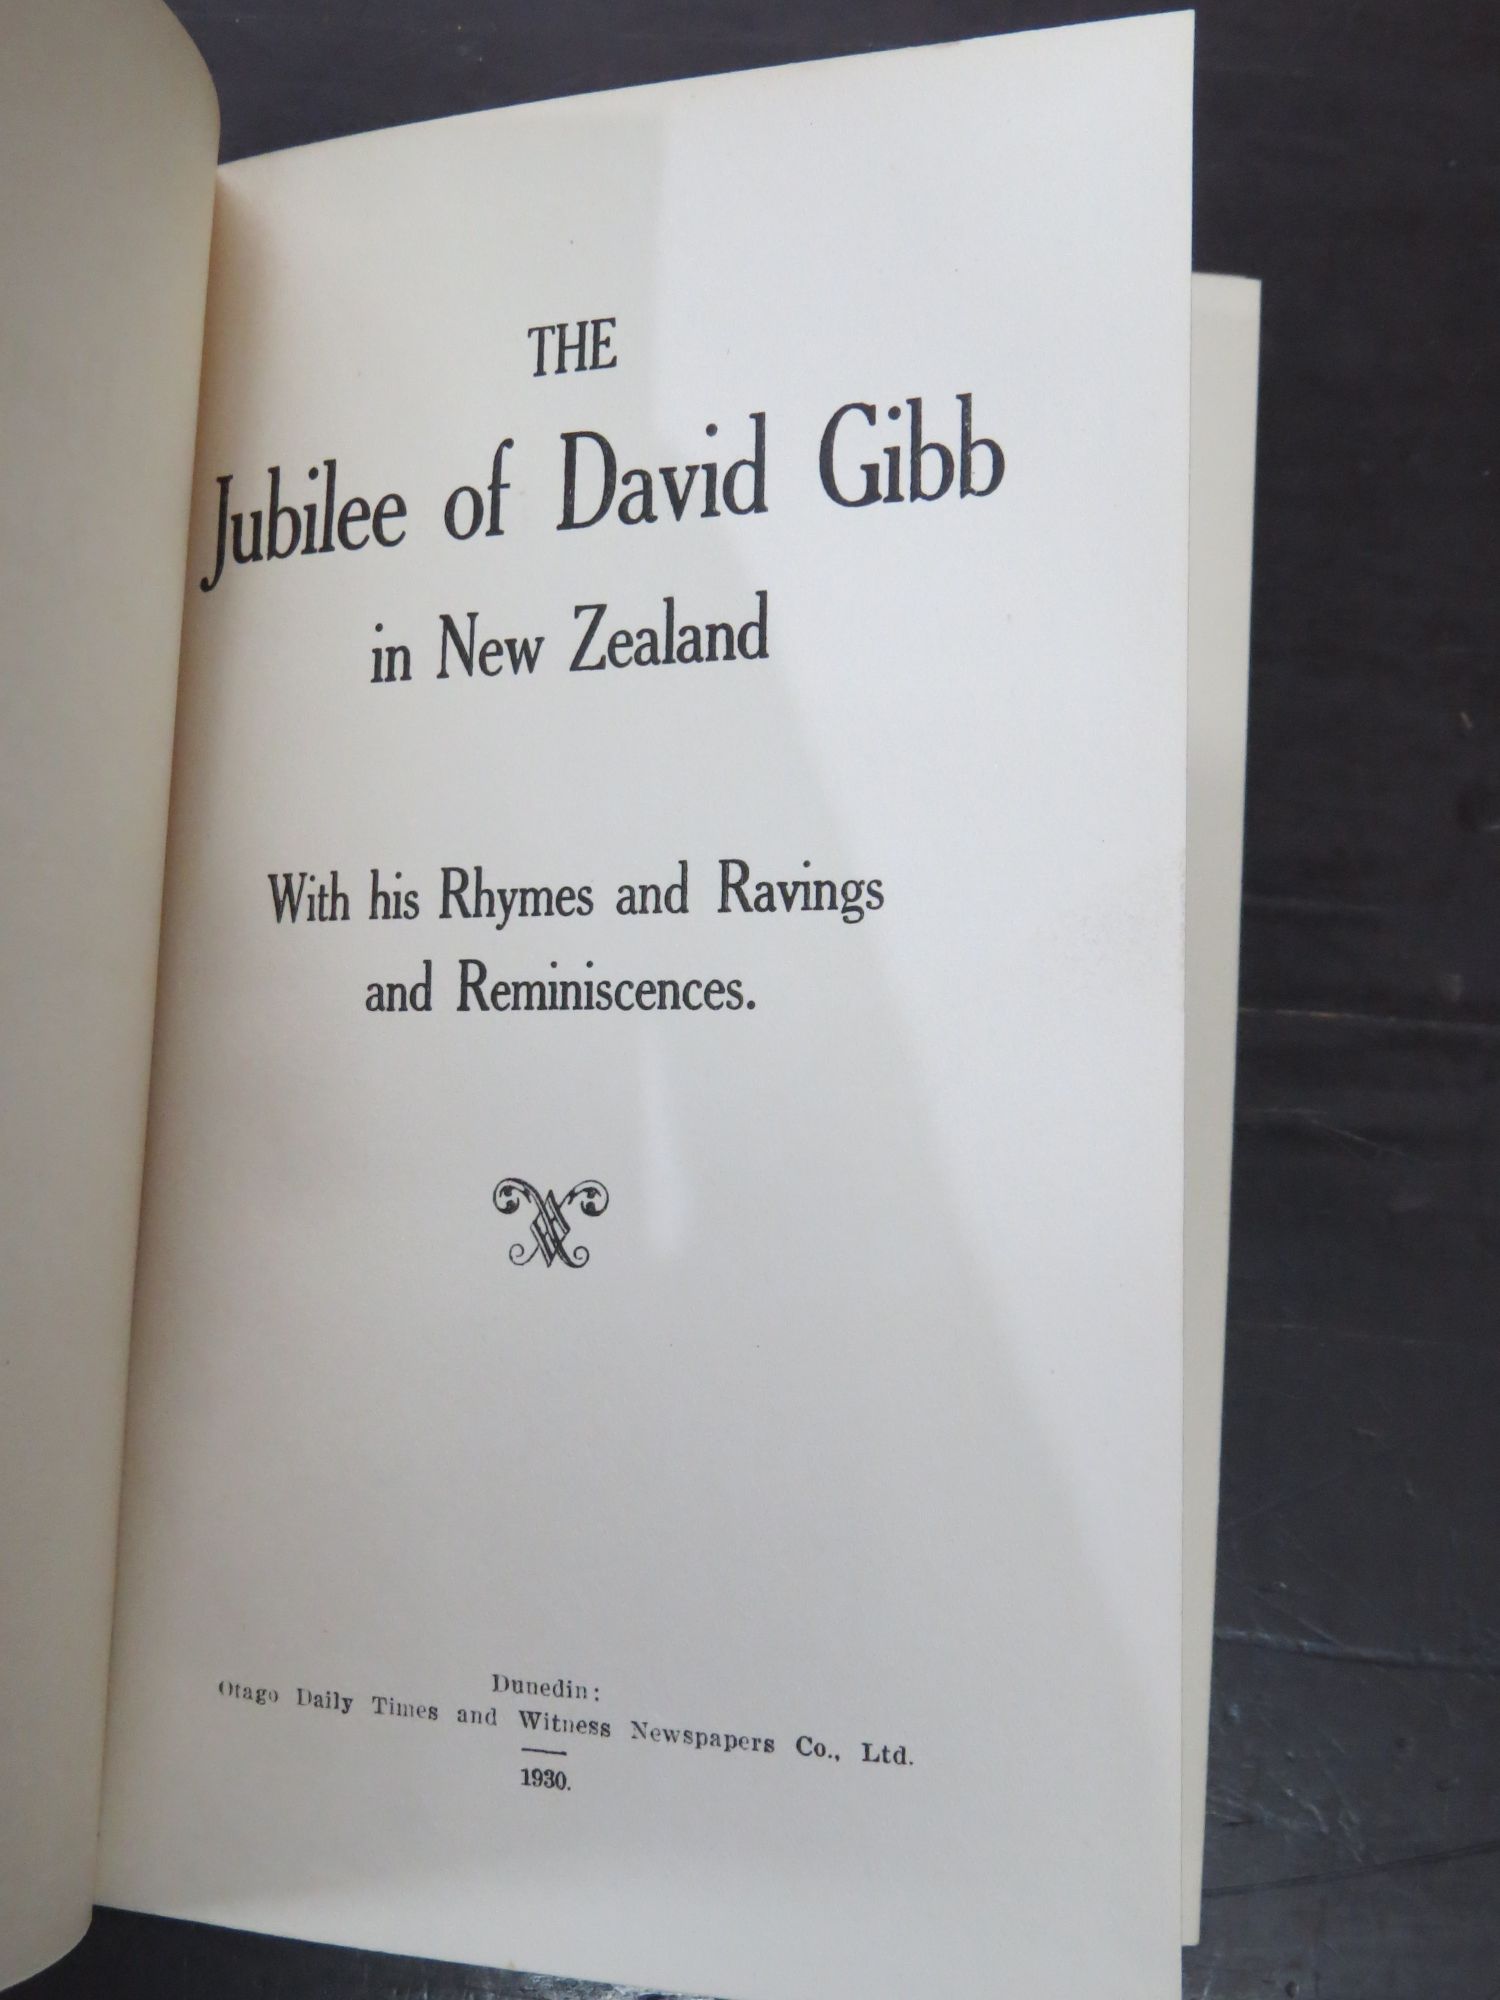 david gibb travel writer